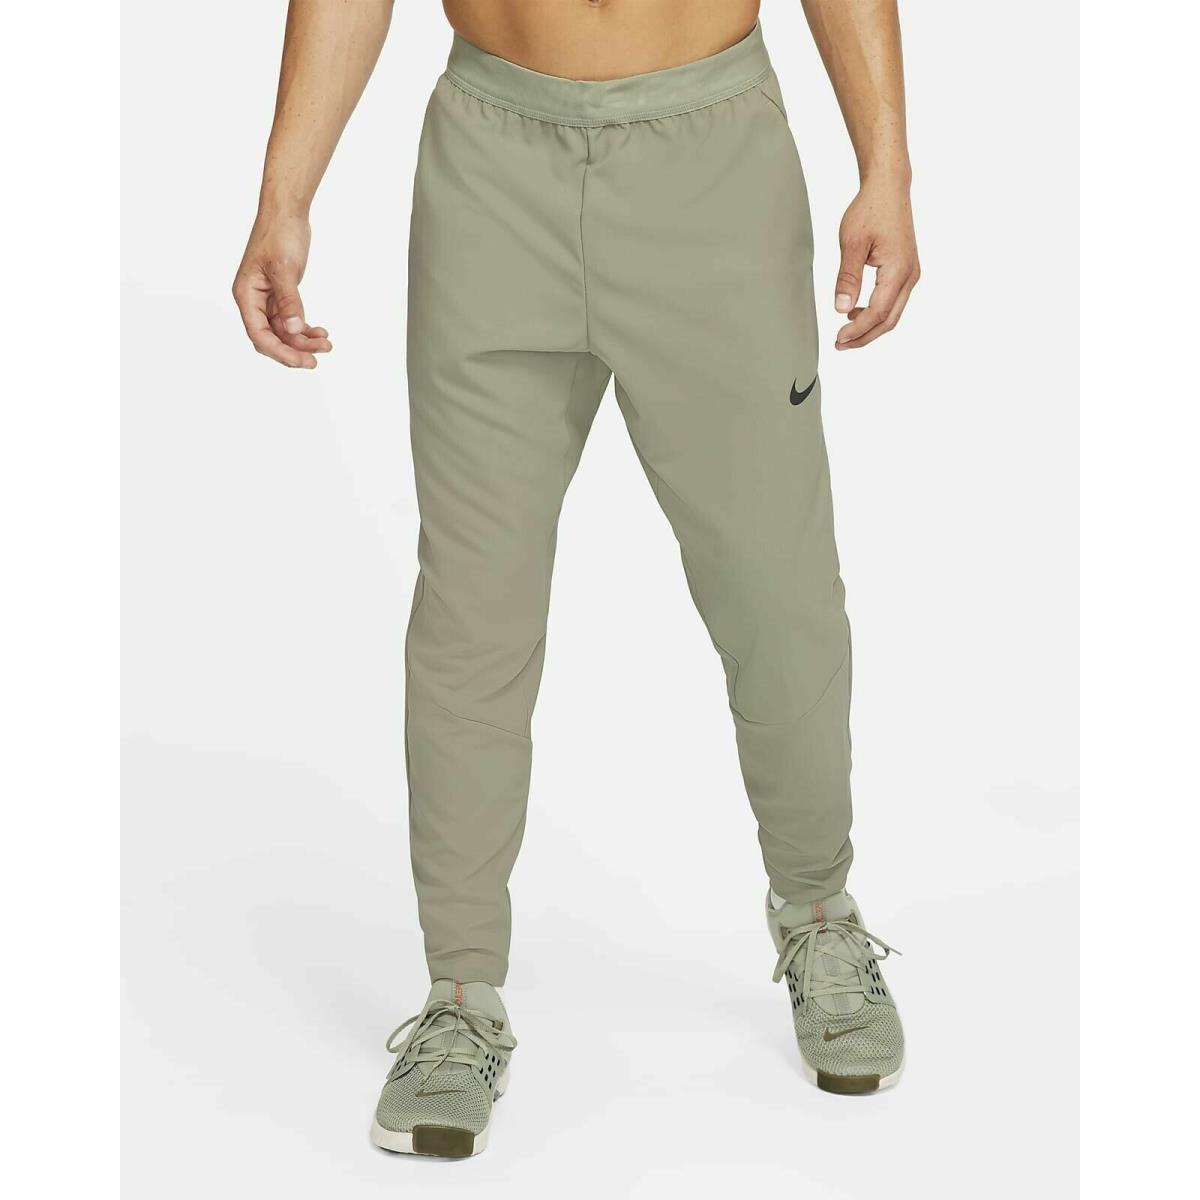 Nike Pro Flex Dri Fit Training Jogger Size S Tall Army Green Pants CJ2218-320